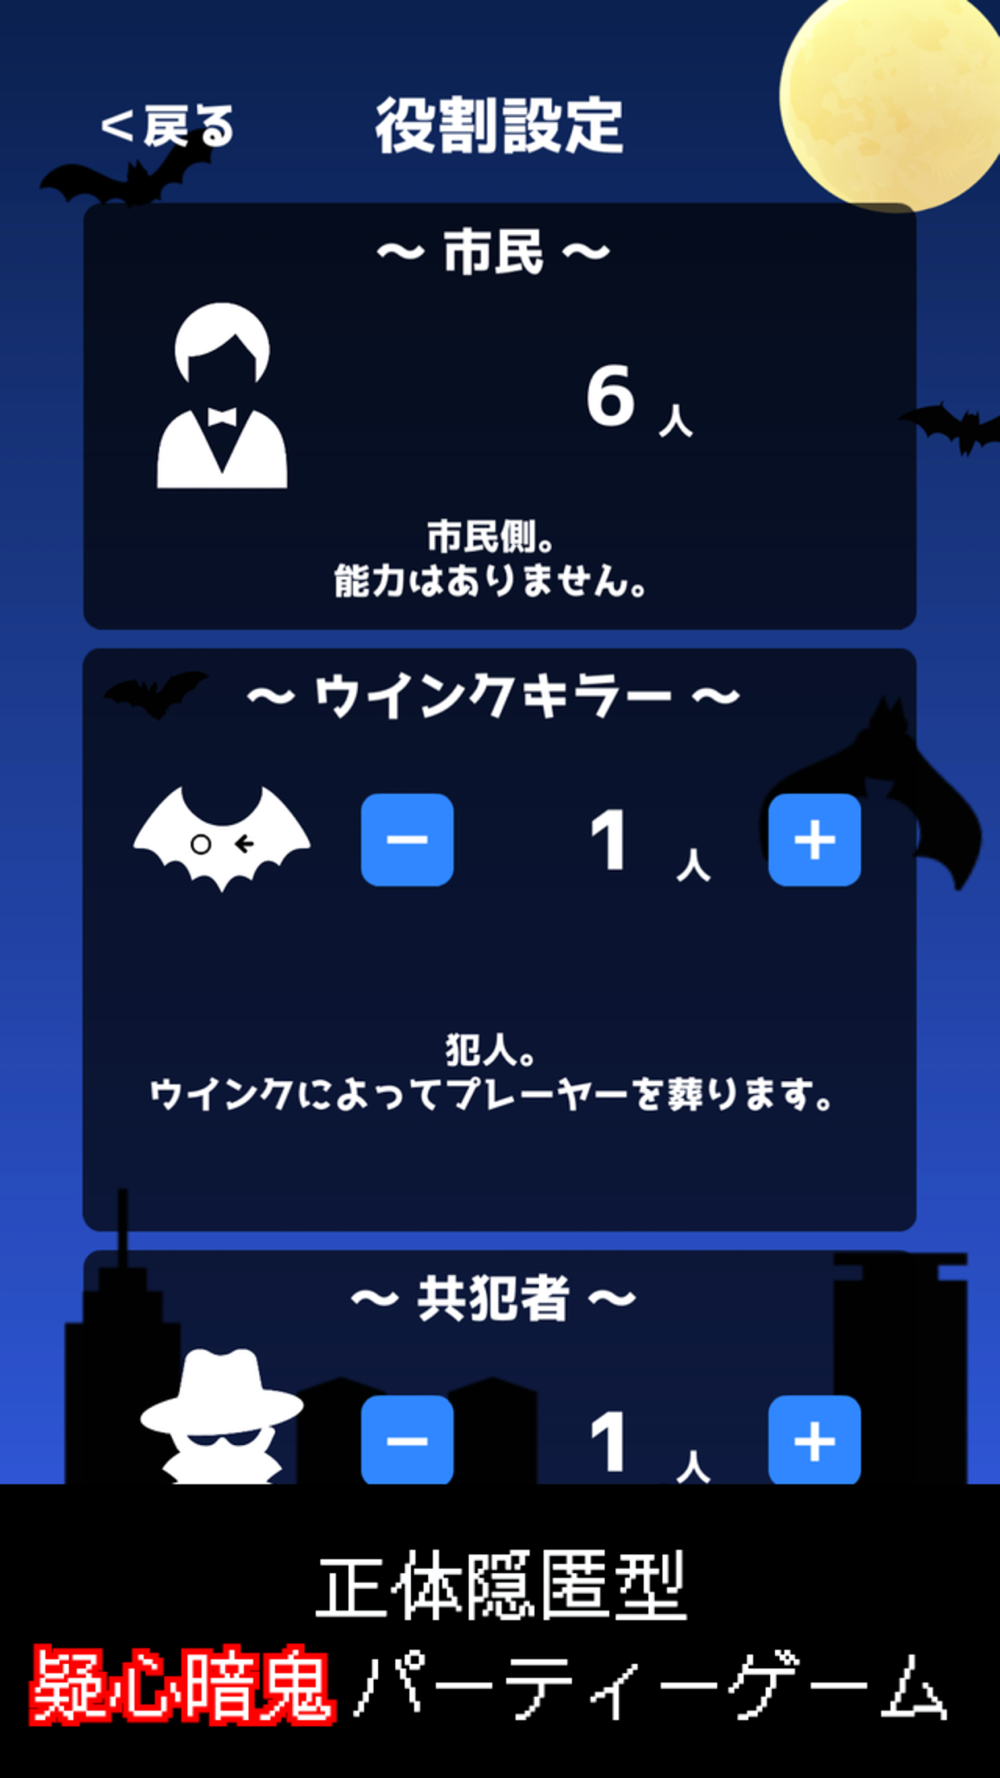 ウインクキラー 目で 暗殺 パーティーゲーム Free Download App For Iphone Steprimo Com